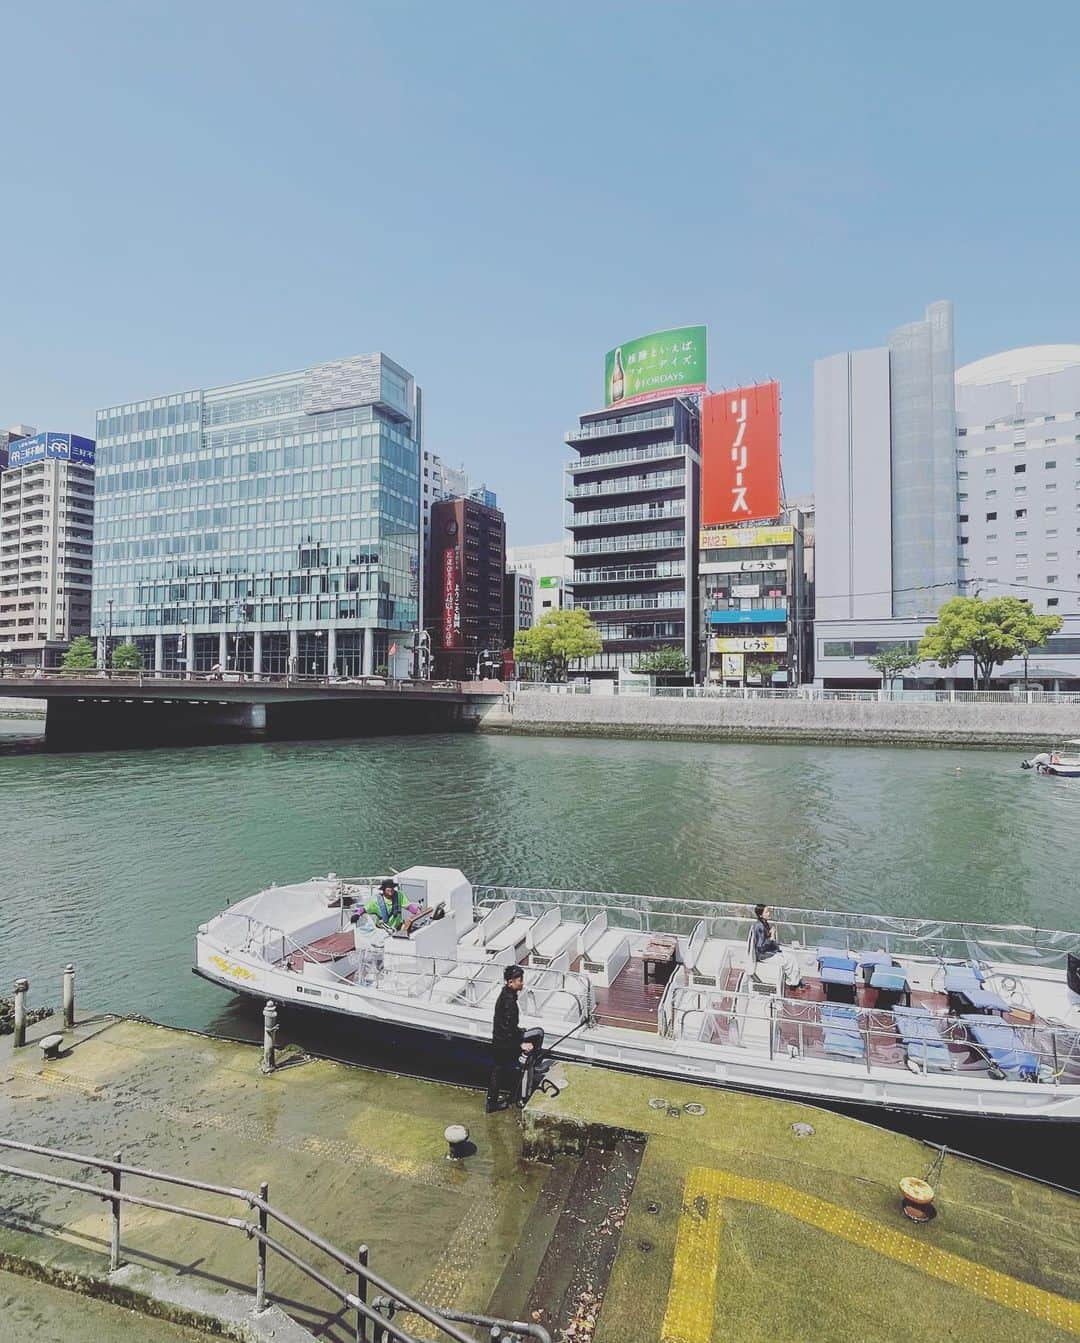 光永亮太さんのインスタグラム写真 - (光永亮太Instagram)「今日のFM COCOLO「MOVE ON SATURDAY」 の「赤い風船 TRAVEL UPDATE」でご紹介した内容を改めて！  大阪から新幹線を使って博多までは2時間半。  9年ぶりに訪れた福岡、めちゃくちゃ良かったんです！  まずは活気あふれる福岡の街並みを水上から楽しみたいということで、まずは九州一の繁華街・中洲、観光スポットとして人気のキャナルシティなどを通る、那珂川を走る遊覧船「中洲クルーズ」に乗ってきました！中洲から福岡湾まで周遊してくれる30分の旅。大人1人¥1,000とお手軽。乗り込むとガイドさんが出迎えてくれて、いざ出発！川沿いに佇む名所などを分かりやすく案内してくれます。とにかく風が気持ちいい！これからの季節は最高だと思います。しかも博多湾まで出てくれるので、ちょっとした冒険をした気分。一通り観光して疲れを水上で癒すもよし、夜にネオン輝く中洲の街を水上から眺めるもよし！昼と夜では表情が違うので2回乗っても良いかもしれません。水上から眺める福岡の街はまた違った側面があって街の位置関係を把握できるので「中洲クルーズ」オススメします！     その後向かったのは中洲クルーズから徒歩5分ほど。博多の総鎮守、櫛田神社。博多っ子からは「お櫛田さん」の名前で親しまれている博多祇園山笠が奉納される神社。6月を除き、飾り山笠が1年を通して展示されているのですが、その飾り山笠がとにかく壮観で大迫力！！高さ10メートルはあるでしょうか。思わず「おぉ〜！」と声を上げてしまうほどの迫力でした。ちなみに博多祇園山笠の本番は7月。7月15日の追い山笠がお祭りのクライマックス。それに合わせて行くのもアリですね！旅の安全を祈りつつ、ご挨拶。  続いて櫛田神社から徒歩5分。那珂川沿いに佇む福岡の人気スポット、キャナルシティへ！敷地面積約4万3500平方メートルを誇る大型複合商業施設。ただのショッピングモールと思うことなかれ！敷地中央を流れる運河を中心に、ショッピングモールやレストラン、ホテル、映画館、劇場などの建物が並んでいて、さらに3Dプロジェクションマッピングと噴水のアクアパノラマなどエンターテイメントも楽しめる場所。まるでおもちゃ箱のようなワクワクスル場所僕は博多に行くと必ずここを訪れてショッピングに勤しみます。とにかくいろんなお店が入っていて飽きません！観光の合間にショッピングを楽しむならば間違いなくここです！  全体的に海外のショッピングモールのような空間で、ここが日本であることをいい意味で忘れさせてくれる都会のオアシスです。     夜の博多に繰り出す前にホテルにチェックイン。今回宿泊させていただいたのはホテルニューオータニ博多。福岡を代表するホテルの一つです。まずエントランスを入ると、床は大理石で格式が高く、ロビーがとにかく広い！そしてベルマンのきめ細やかな対応に触れることができます。チェックインを済ませエレベーターを上がると、部屋までの長い回廊がとにかく気品漂っているんです！今回宿泊させて頂いたのはエグゼクティブツイン。部屋の扉を開けると、シックな空間に高級感漂う洗練されたインテリアが目に飛び込んできます！この時点でテンション爆上がり。嬉しかったのは窓側にワーキングデスクが置かれていたこと。福岡の街を眺めながらパソコンに向かえるという贅沢を味わうことができました。とにかく清潔で美しい！そして居心地が抜群でした。朝、ドアに新聞を届けてくれるサービスも個人的に嬉しかった！スタッフの方々もとにかく丁寧で、きめ細やかなサービスはさすが！という感じでした。  そしてニューオータニ博多の朝食も美味しかった！  会場が洋食中心のモーニングビュッフェか和定食かで会場が分かれているのですが、僕はモーニングビュッフェの方に行きました。とにかくパンの種類が豊富！デニッシュだけでも3種類、クロワッサンもプレーンとチーズ入りの2種類。そレニ加えて食パン、チョコチップマフィン、くるみぱん、バゲットを使ったフレンチトーストとどれを選べば良いか悩んでしまうくらいの種類。そして個人的に刺さったのがオムレツ。目の前でシェフの方が一人前ずつ作ってくれるのですが、プレーン、チーズ、ミックスから選べました。僕は迷わずミックスを注文。中にはネギ、チーズ、そして明太子が入っておりました！さすがは博多！朝食からも福岡の息吹を感じることができたのは嬉しかったです。美味しかった！さすがはニューオータニさん。大満足の朝食でした。   まだまだ博多の魅力をお伝えしたいのですが、今日はここまで！  来週5/6の放送では博多のオススメグルメに迫ります！  @west_akafu  @newotani_hakata_official   #博多 #福岡 #にこta #赤い風船関西版 #中洲クルーズ #櫛田神社 #キャナルシティ博多 #fmcocolo #move765 #光永亮太」4月29日 11時34分 - mitsunagaryota